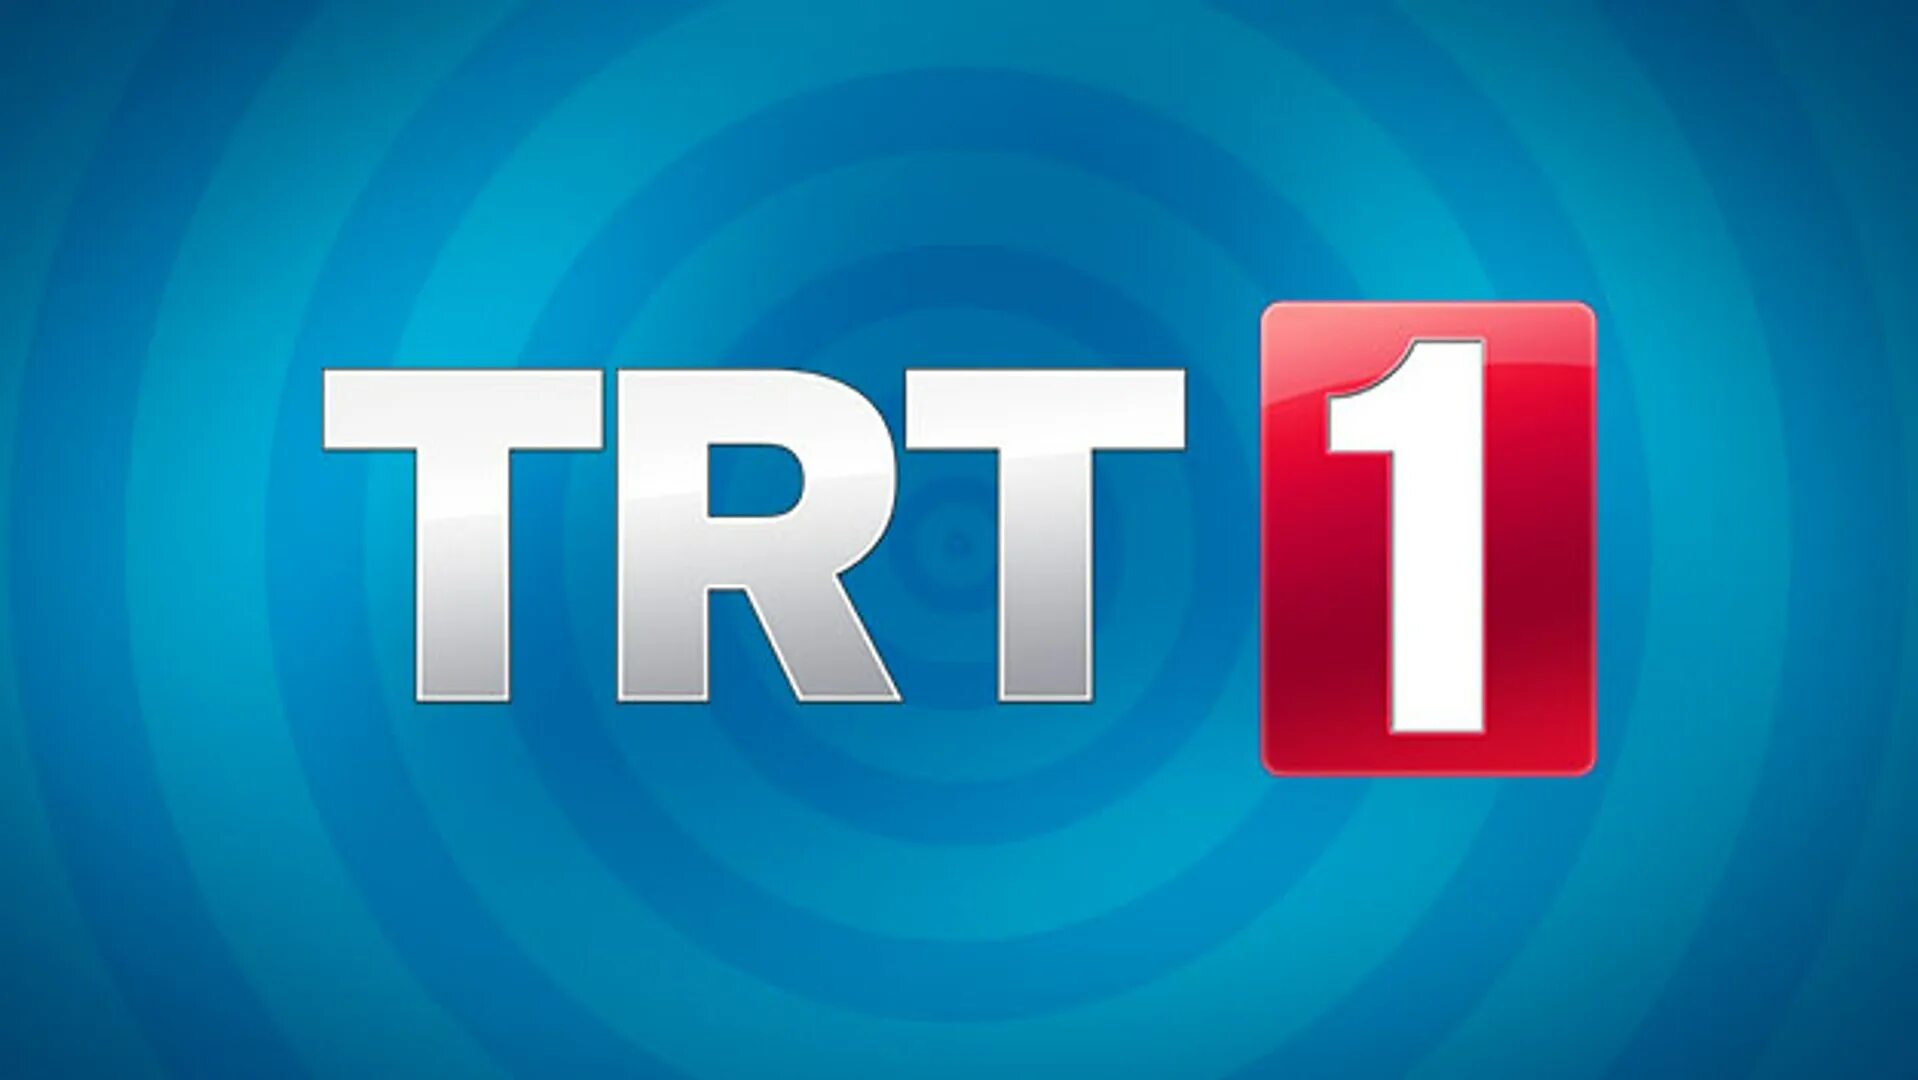 TRT. TRT 1. Телеканал TRT. TRT турецкий канал.